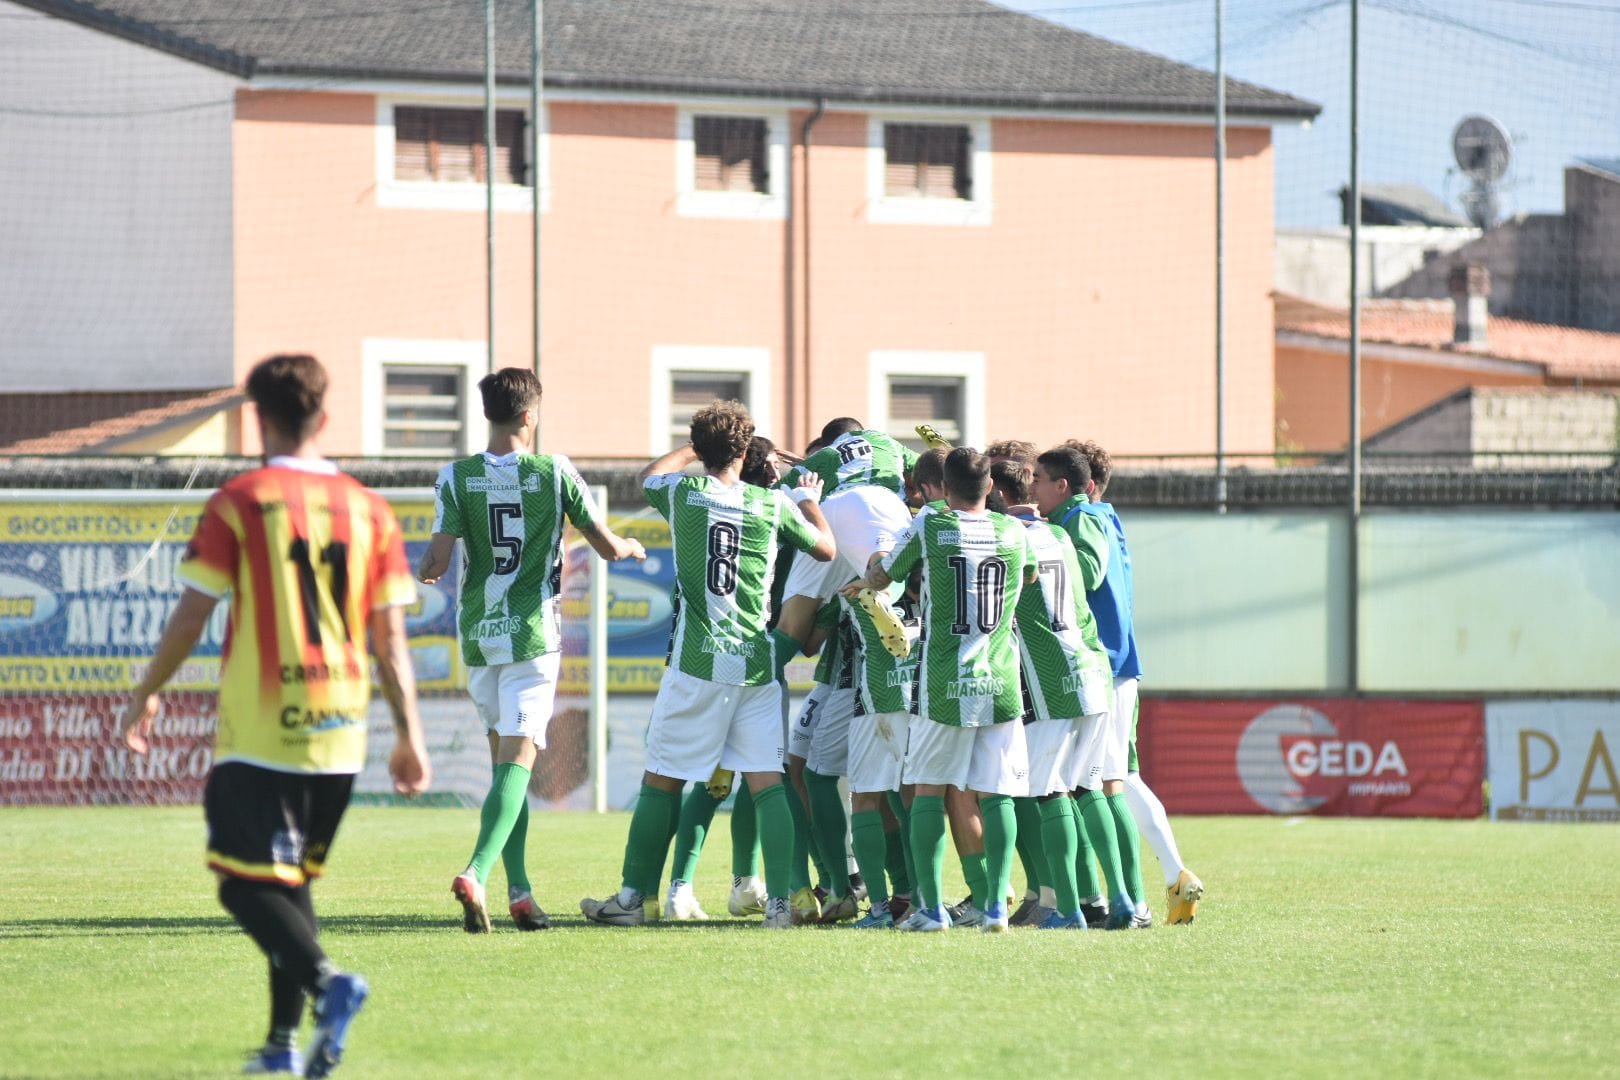 Focus Avezzano, il Ds Agliano: “Vogliamo riscattare la sconfitta dell'andata e l'eliminazione in Coppa Italia” – Riviera Oggi